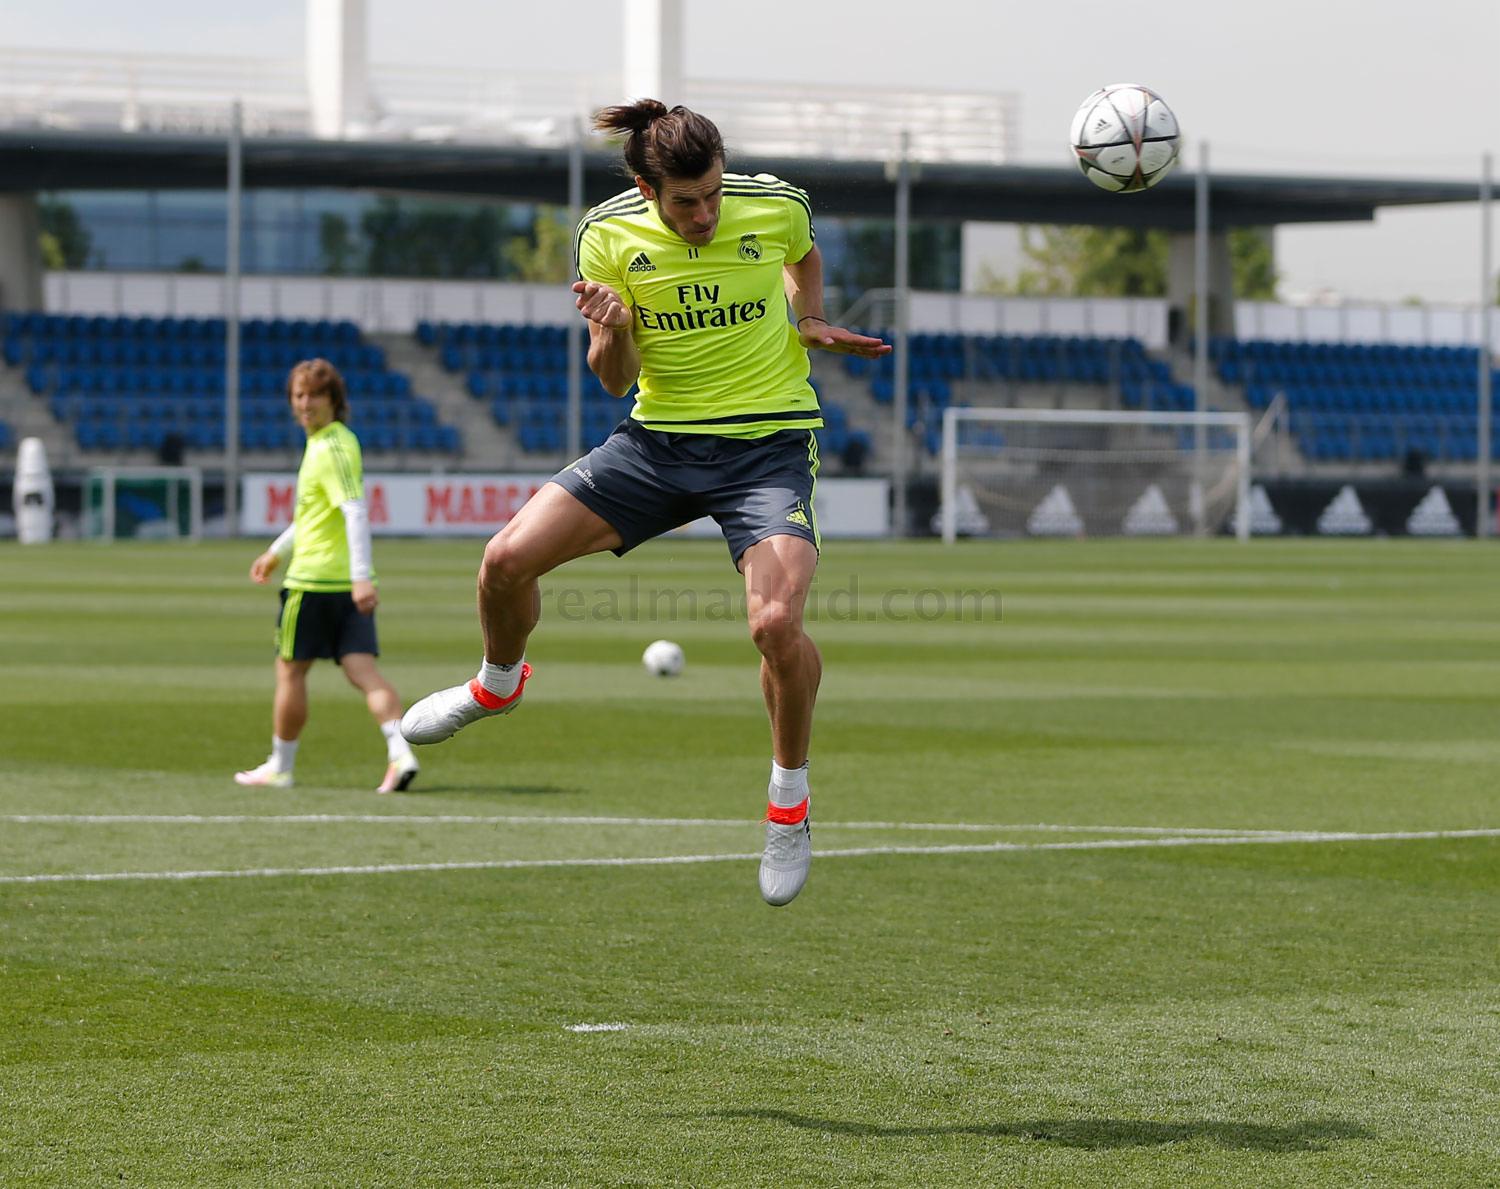 Final preparations. Adidas x Gareth Bale. Footy Москва от 3 лет отзывы фото.